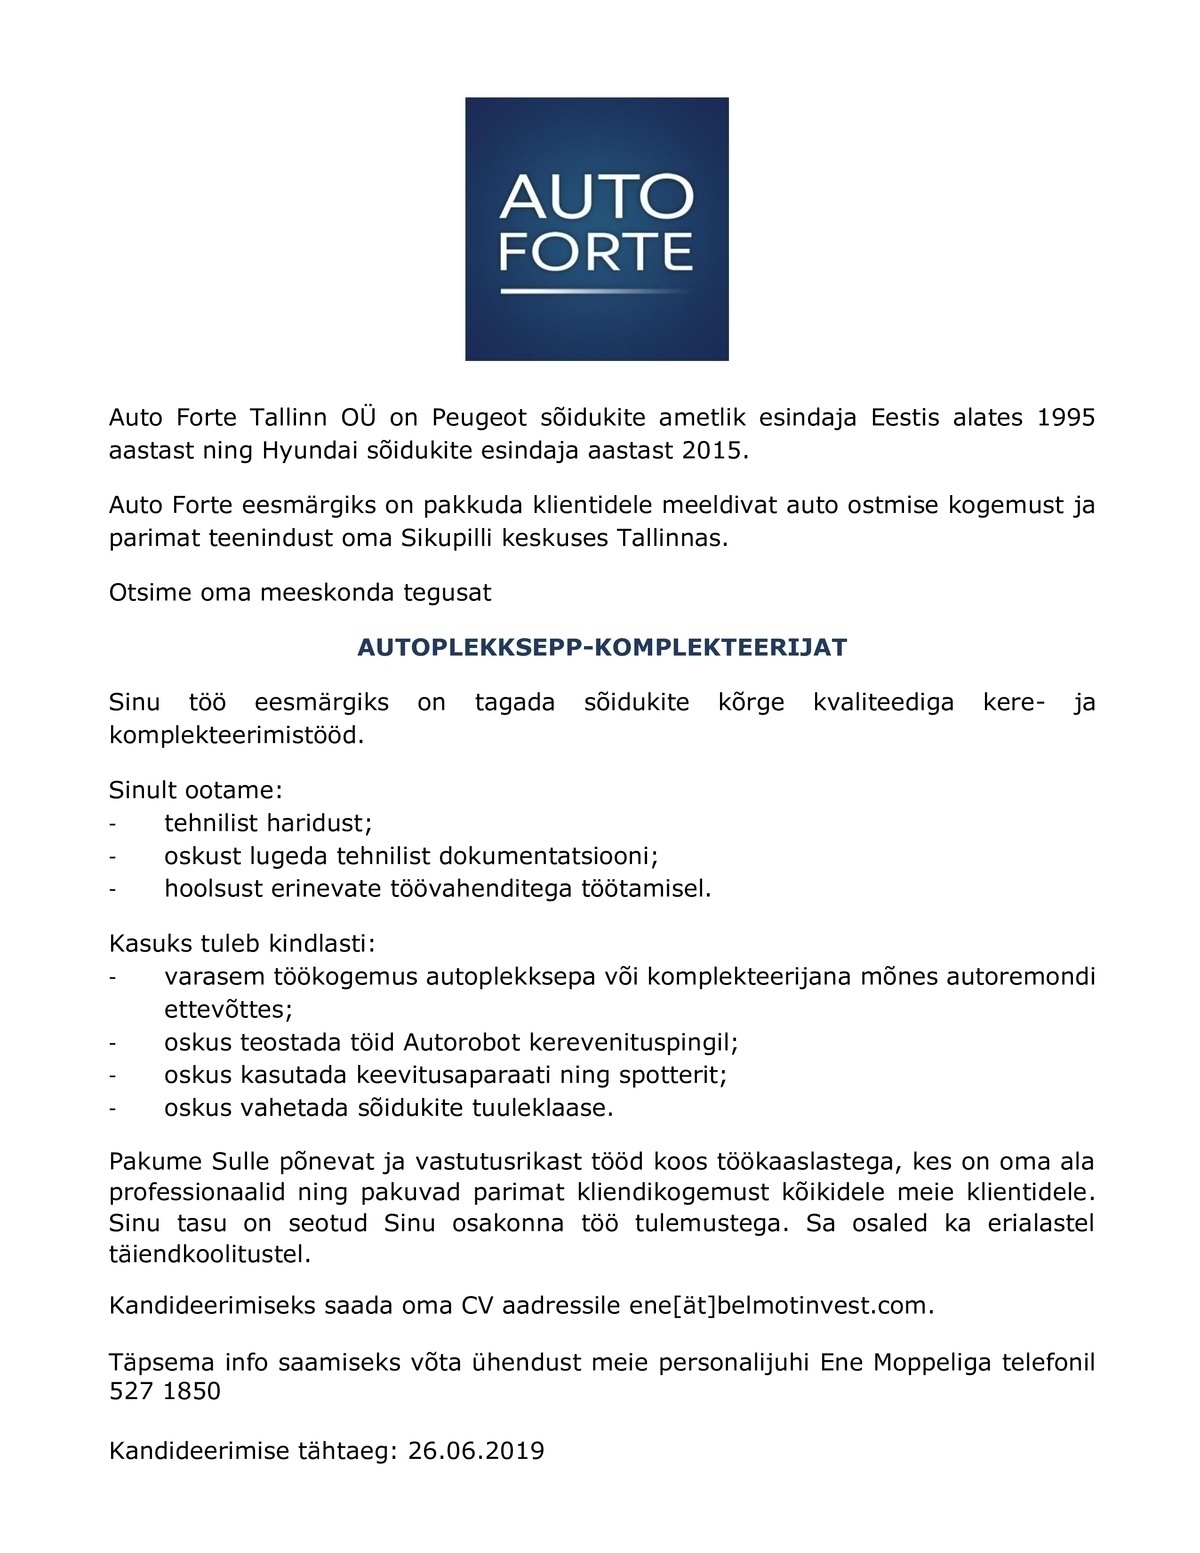 Auto Forte Tallinn OÜ Autoplekksepp-komplekteerija